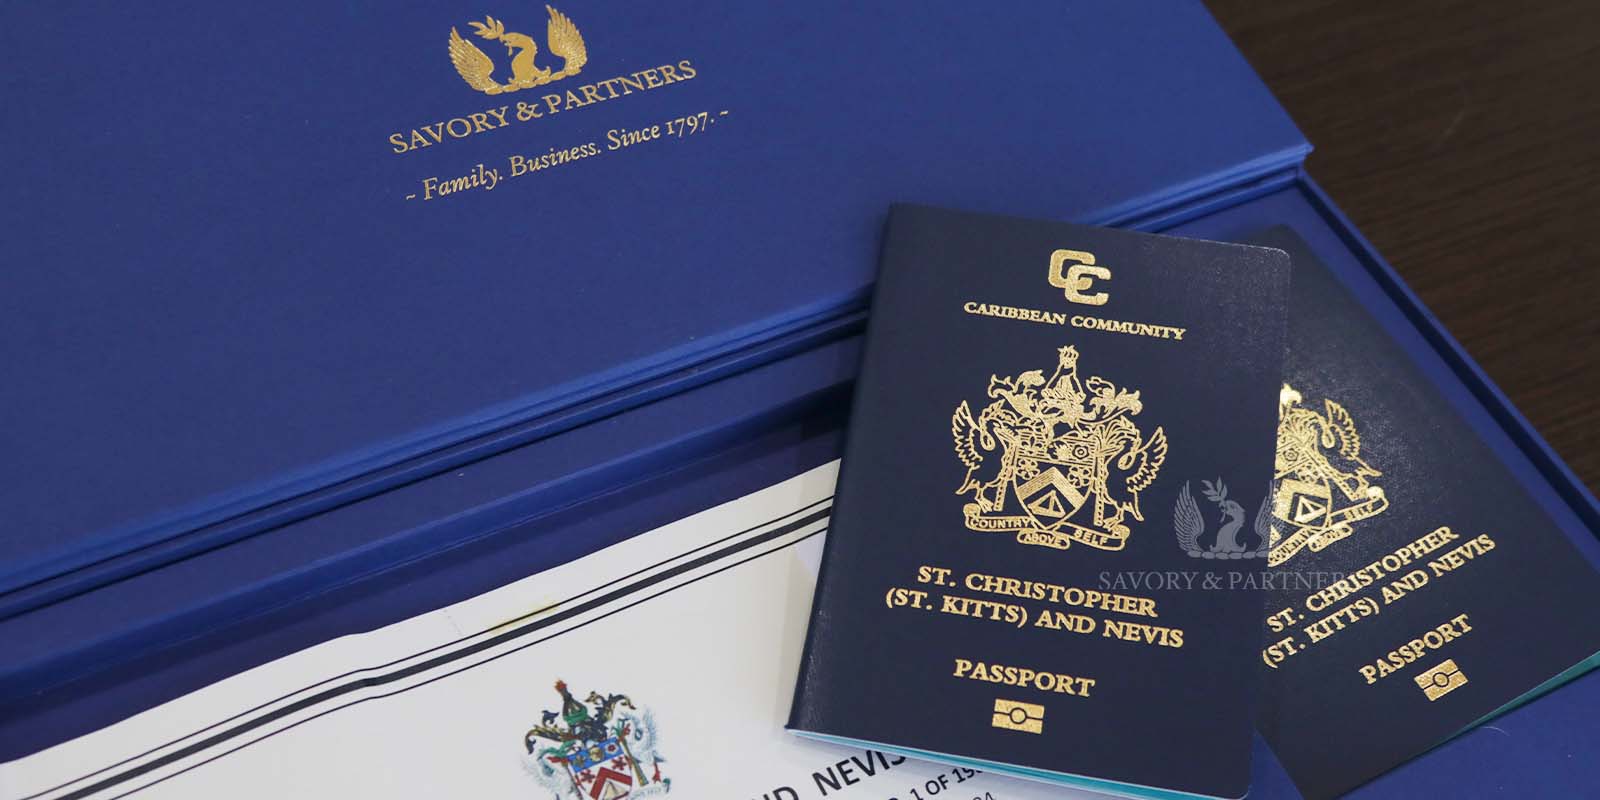 St Kitts & Nevis passport at Savory & Partners Office in Dubai